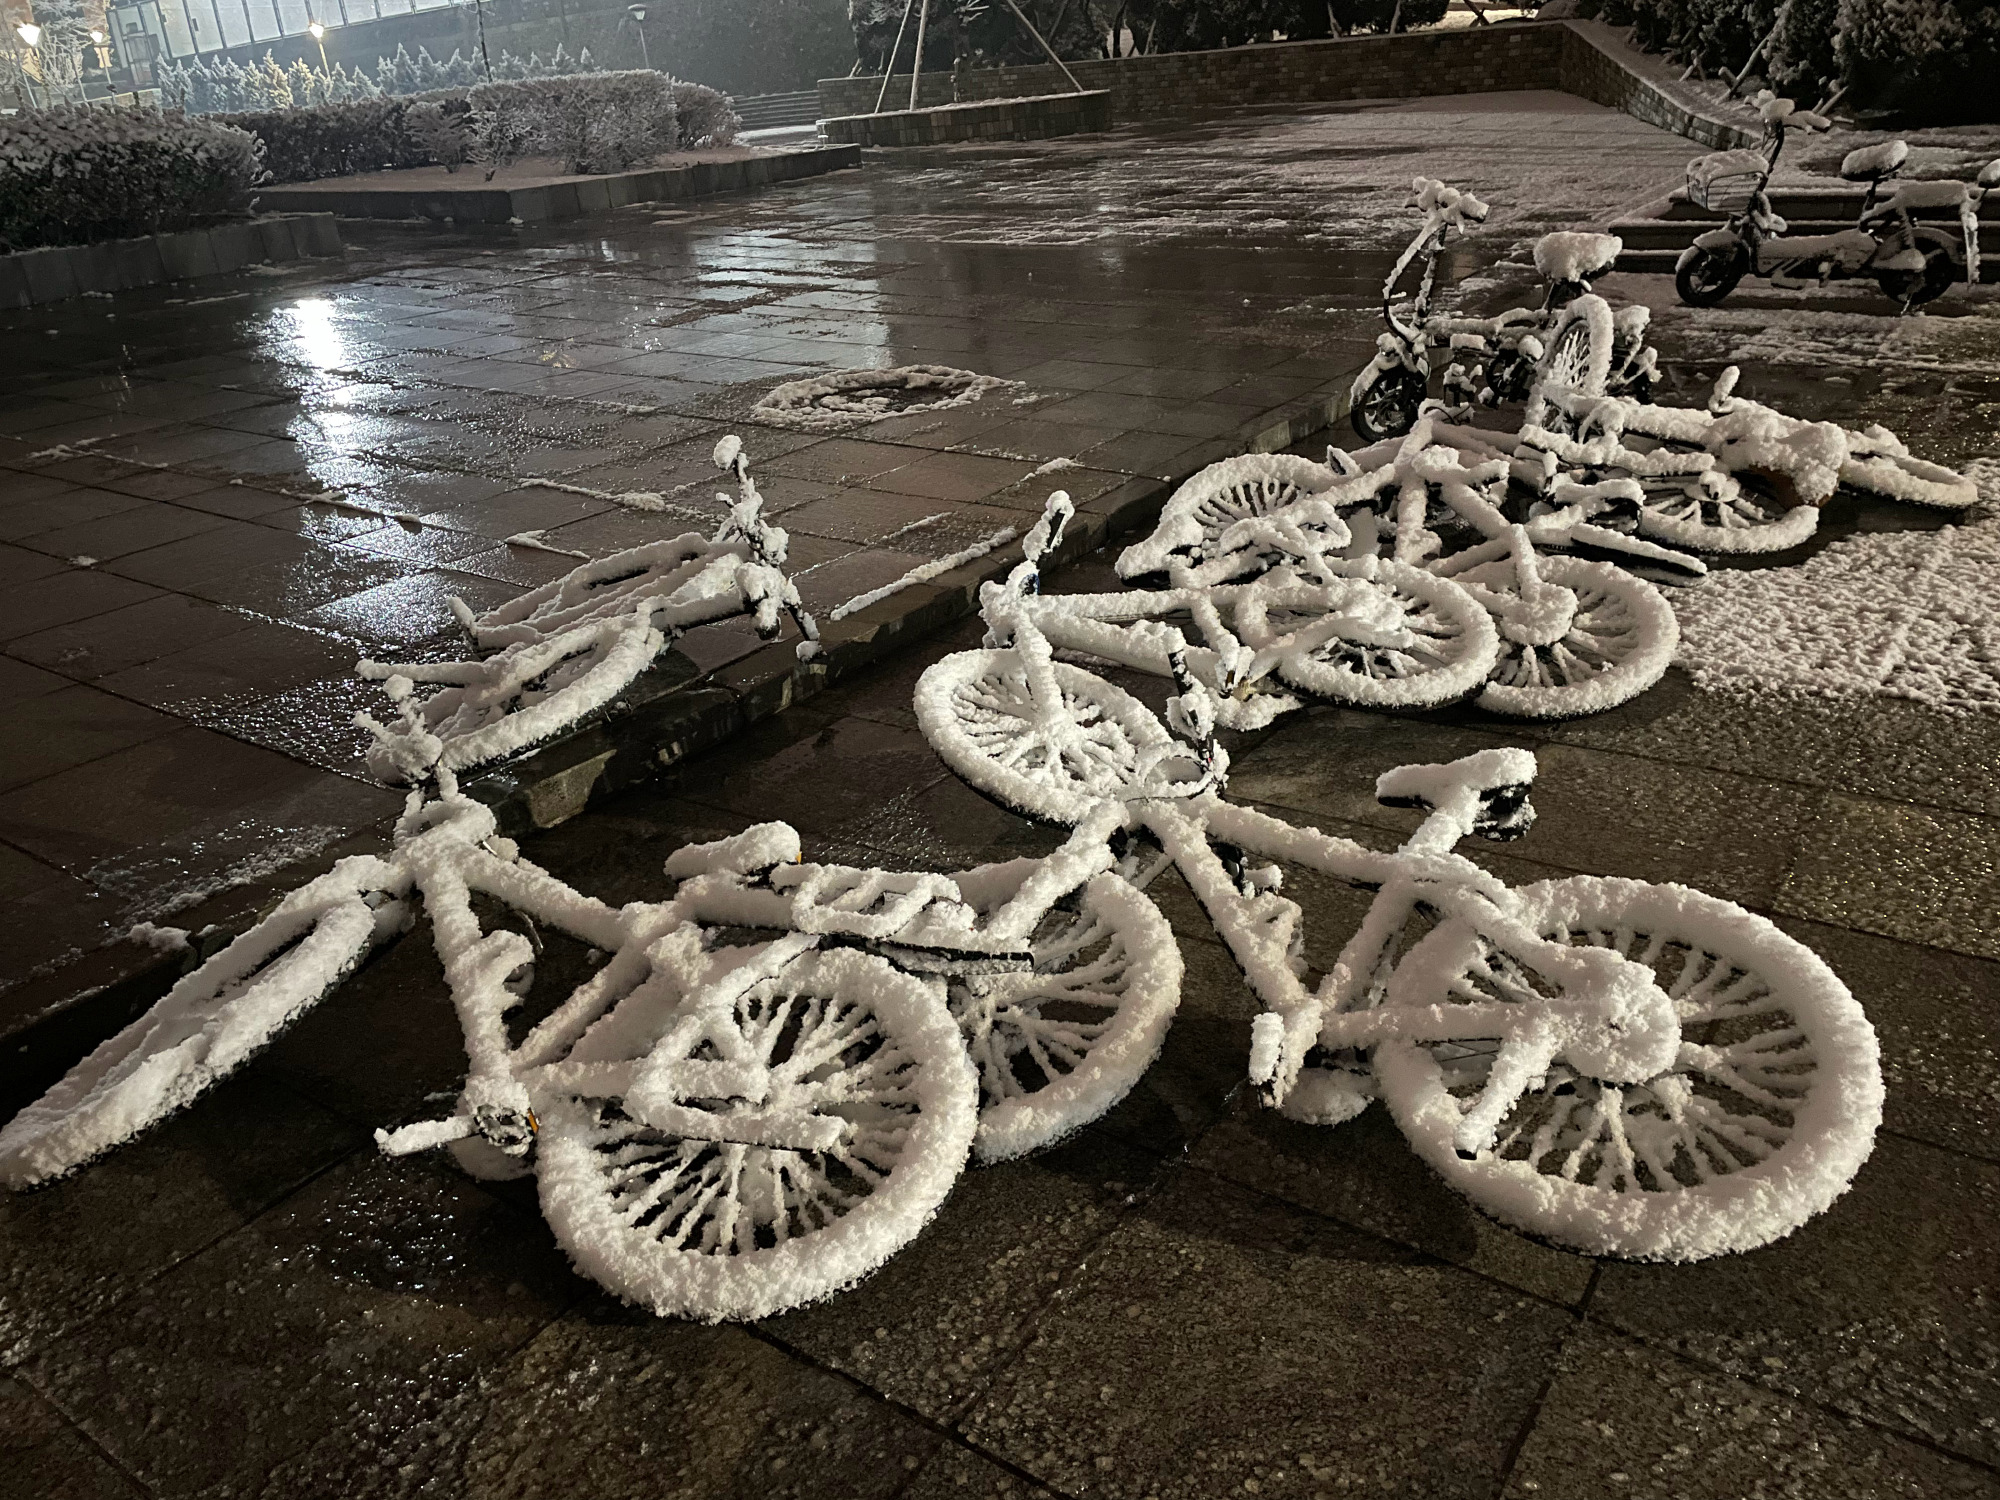 裹了一层雪的自行车看起来很酷